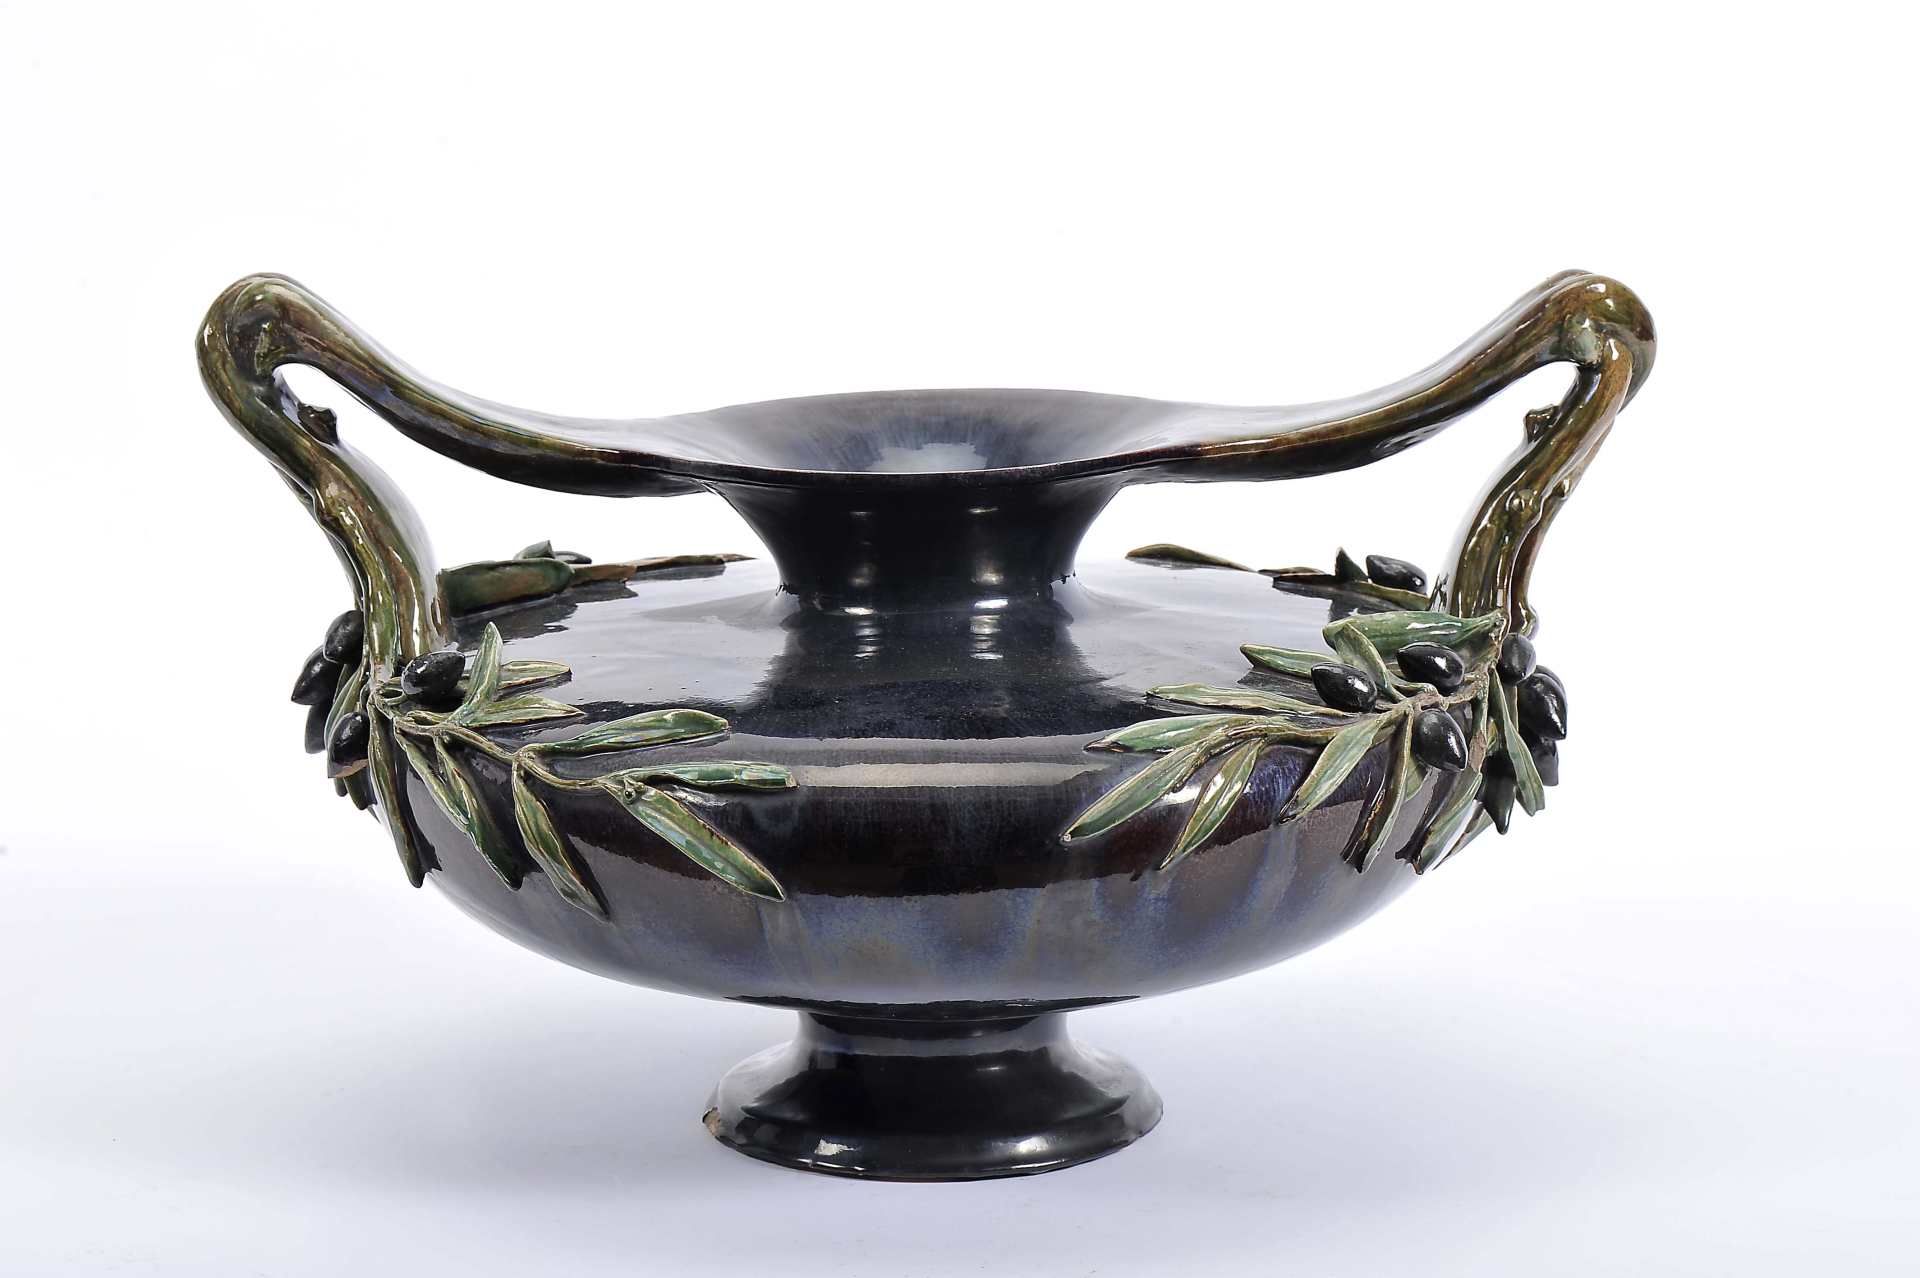 A large "olives" vase